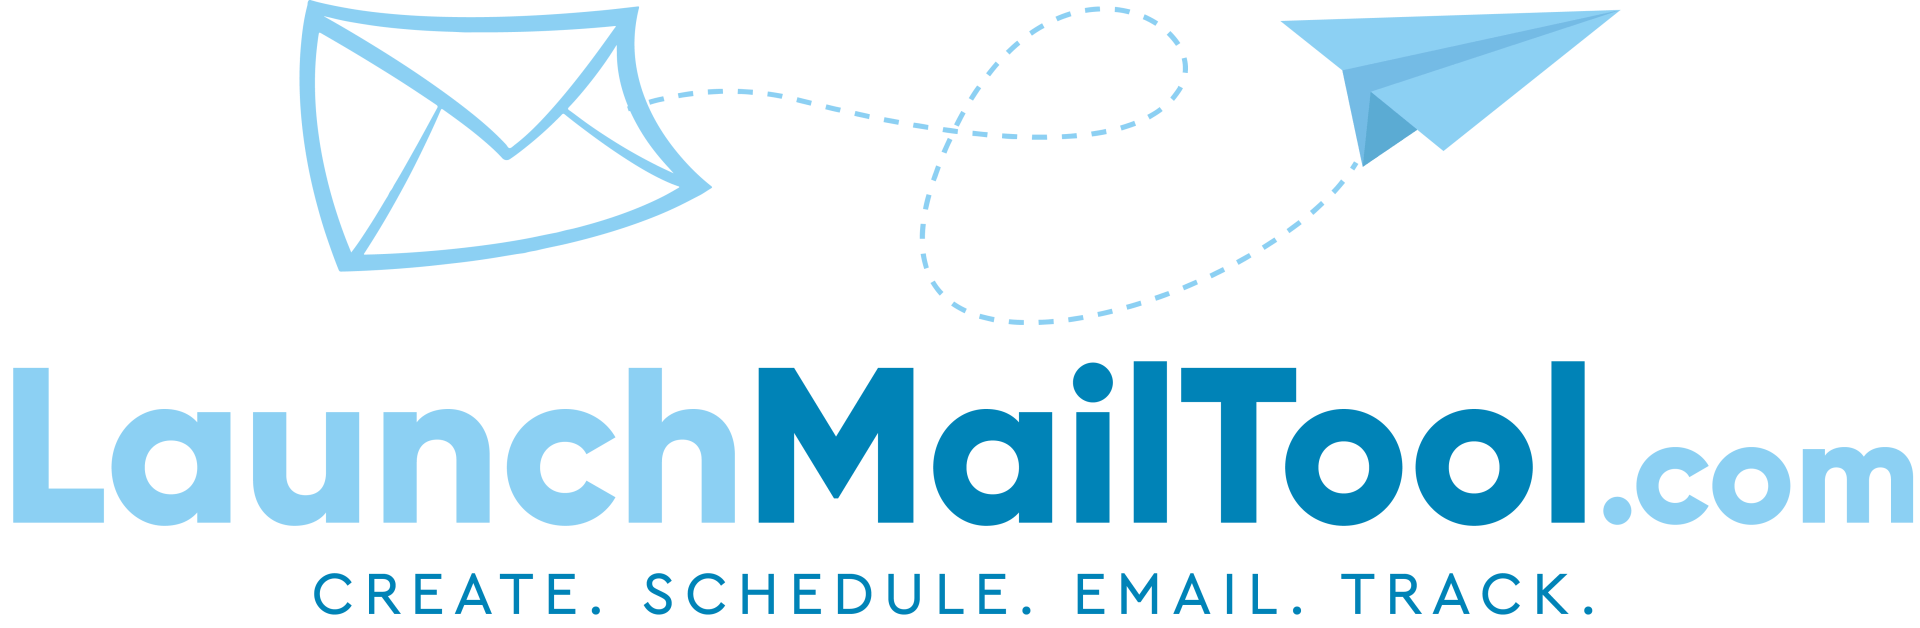 a blue and white logo for launchmailtool.com